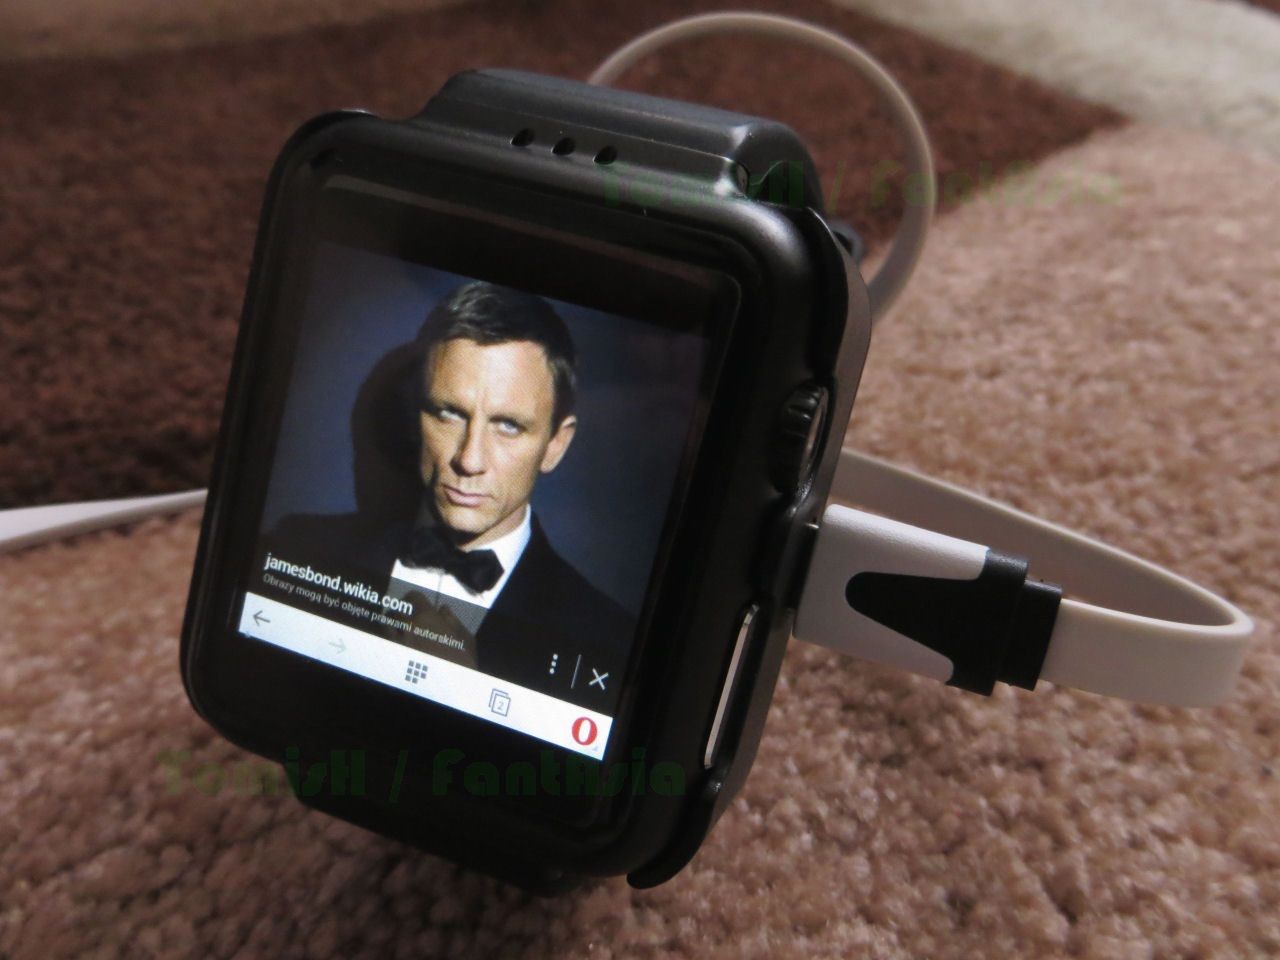 FantAsia: Alps K8 Smart Watch Phone, czyli telefon z Androidem i GPS na nadgarstku